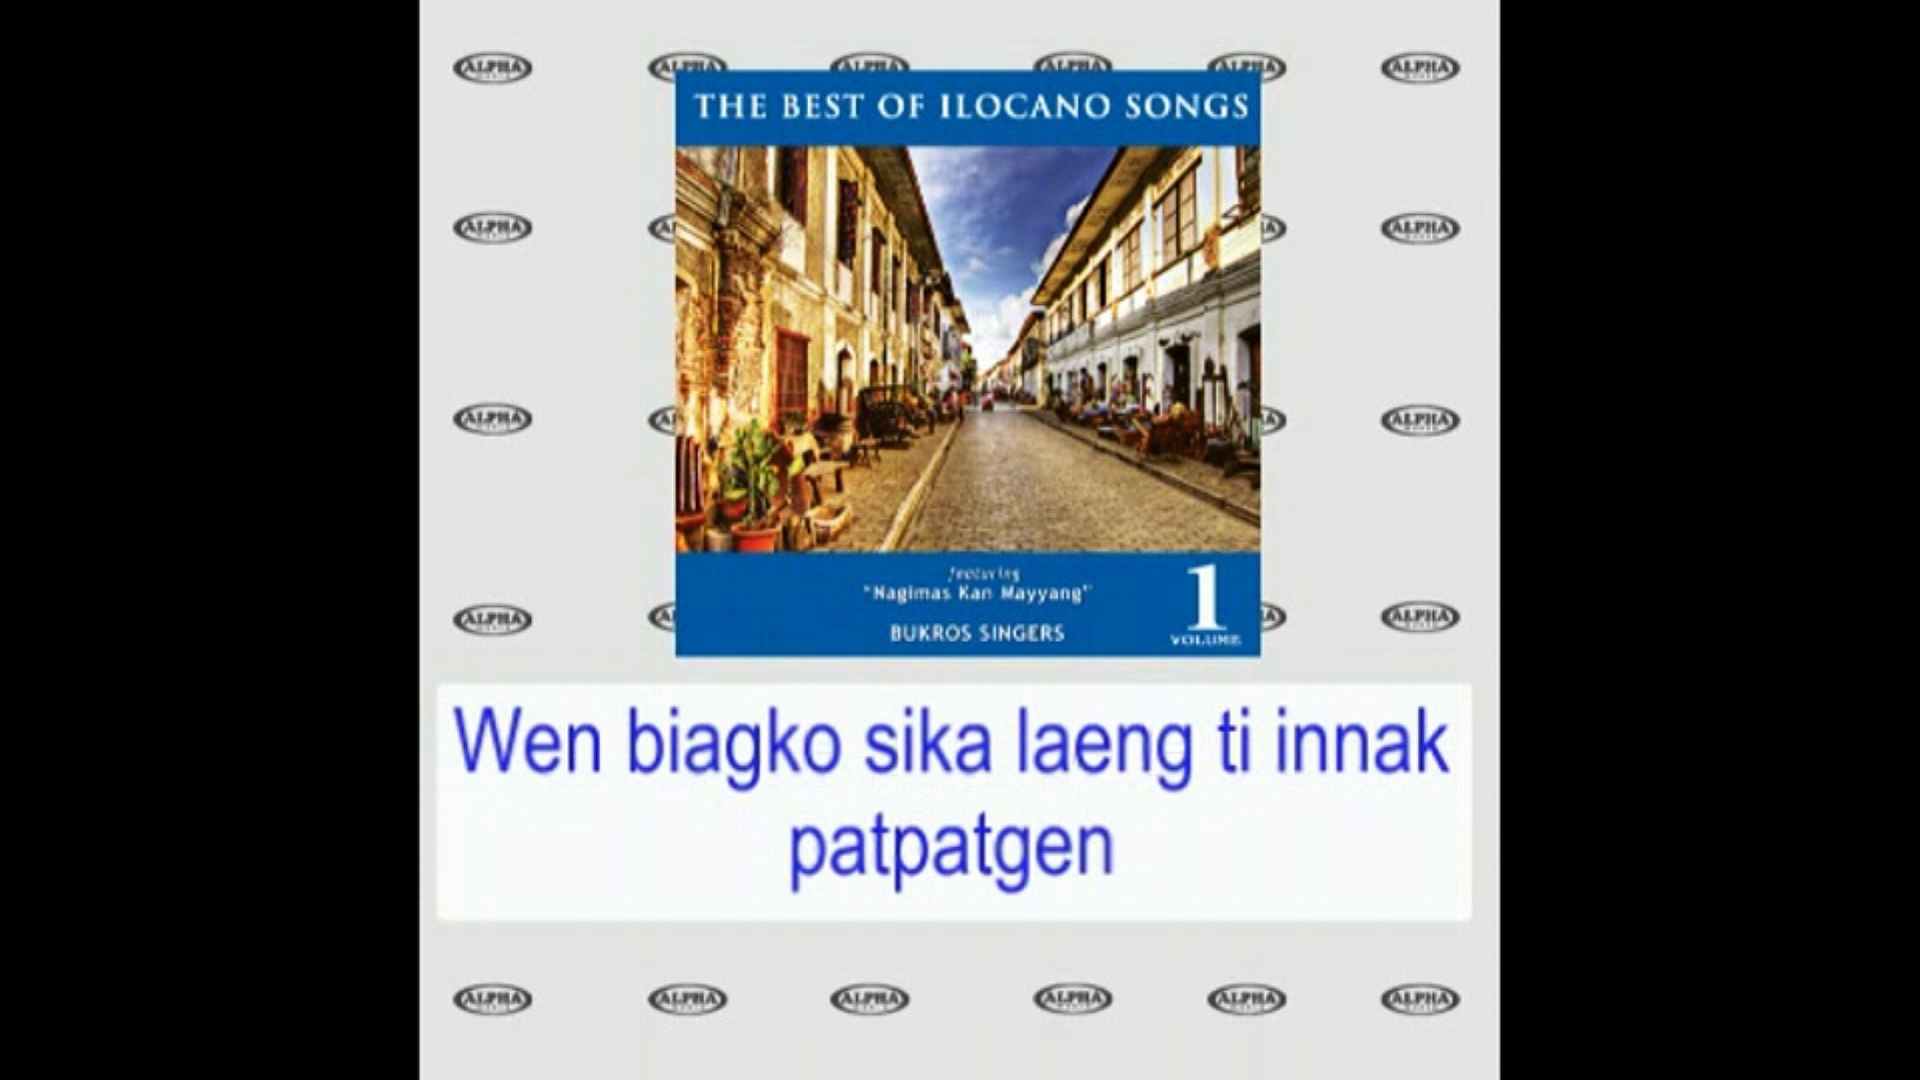 Bukros Singers - Biagko Sika Laeng (Lyrics Video)